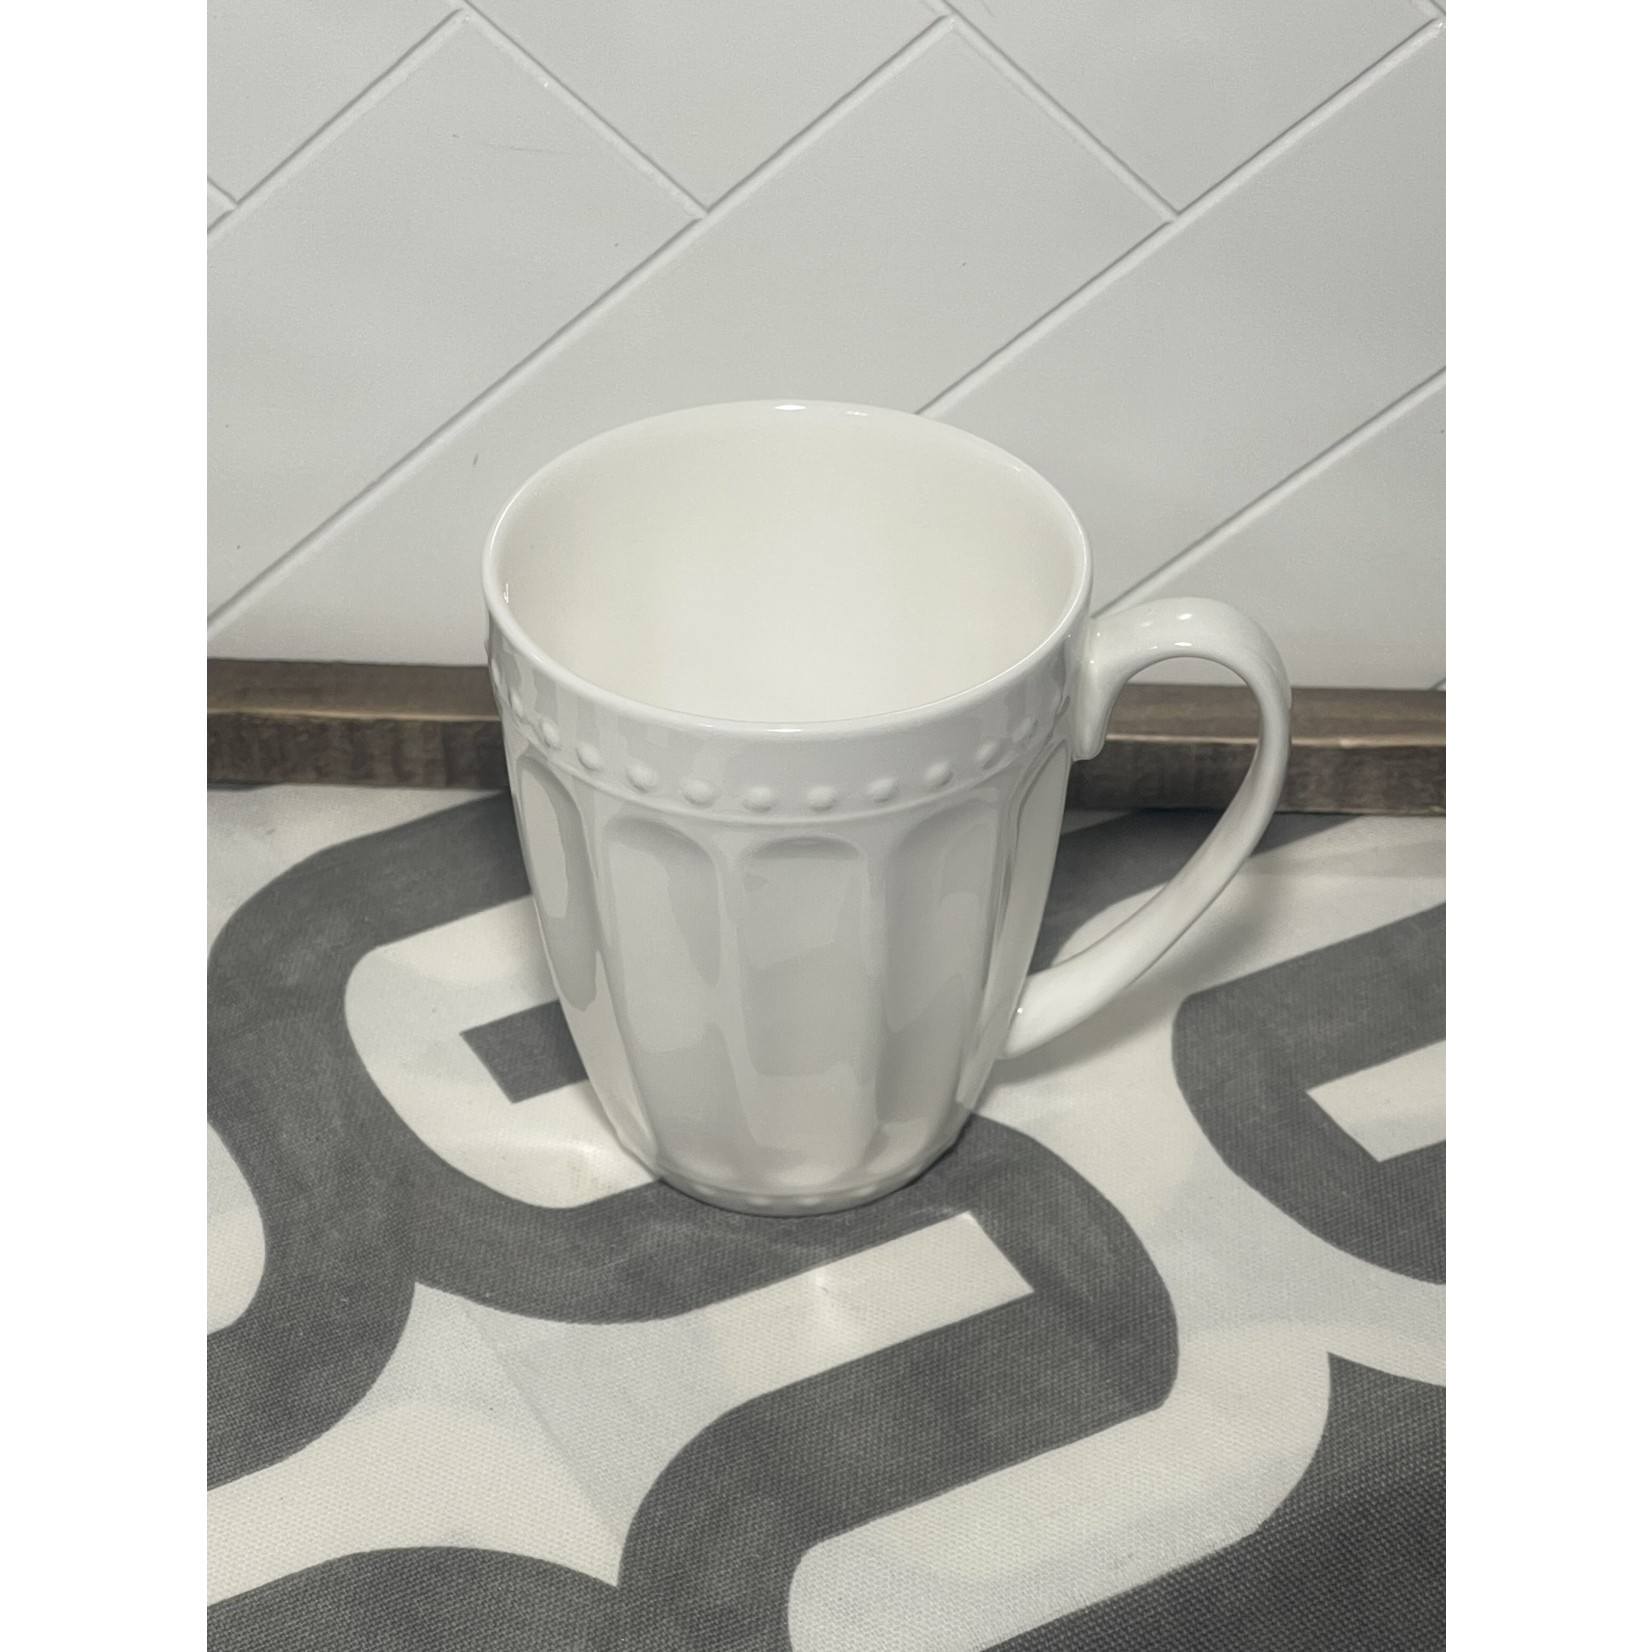 TJ MAXX White Tea Cups / Mugs